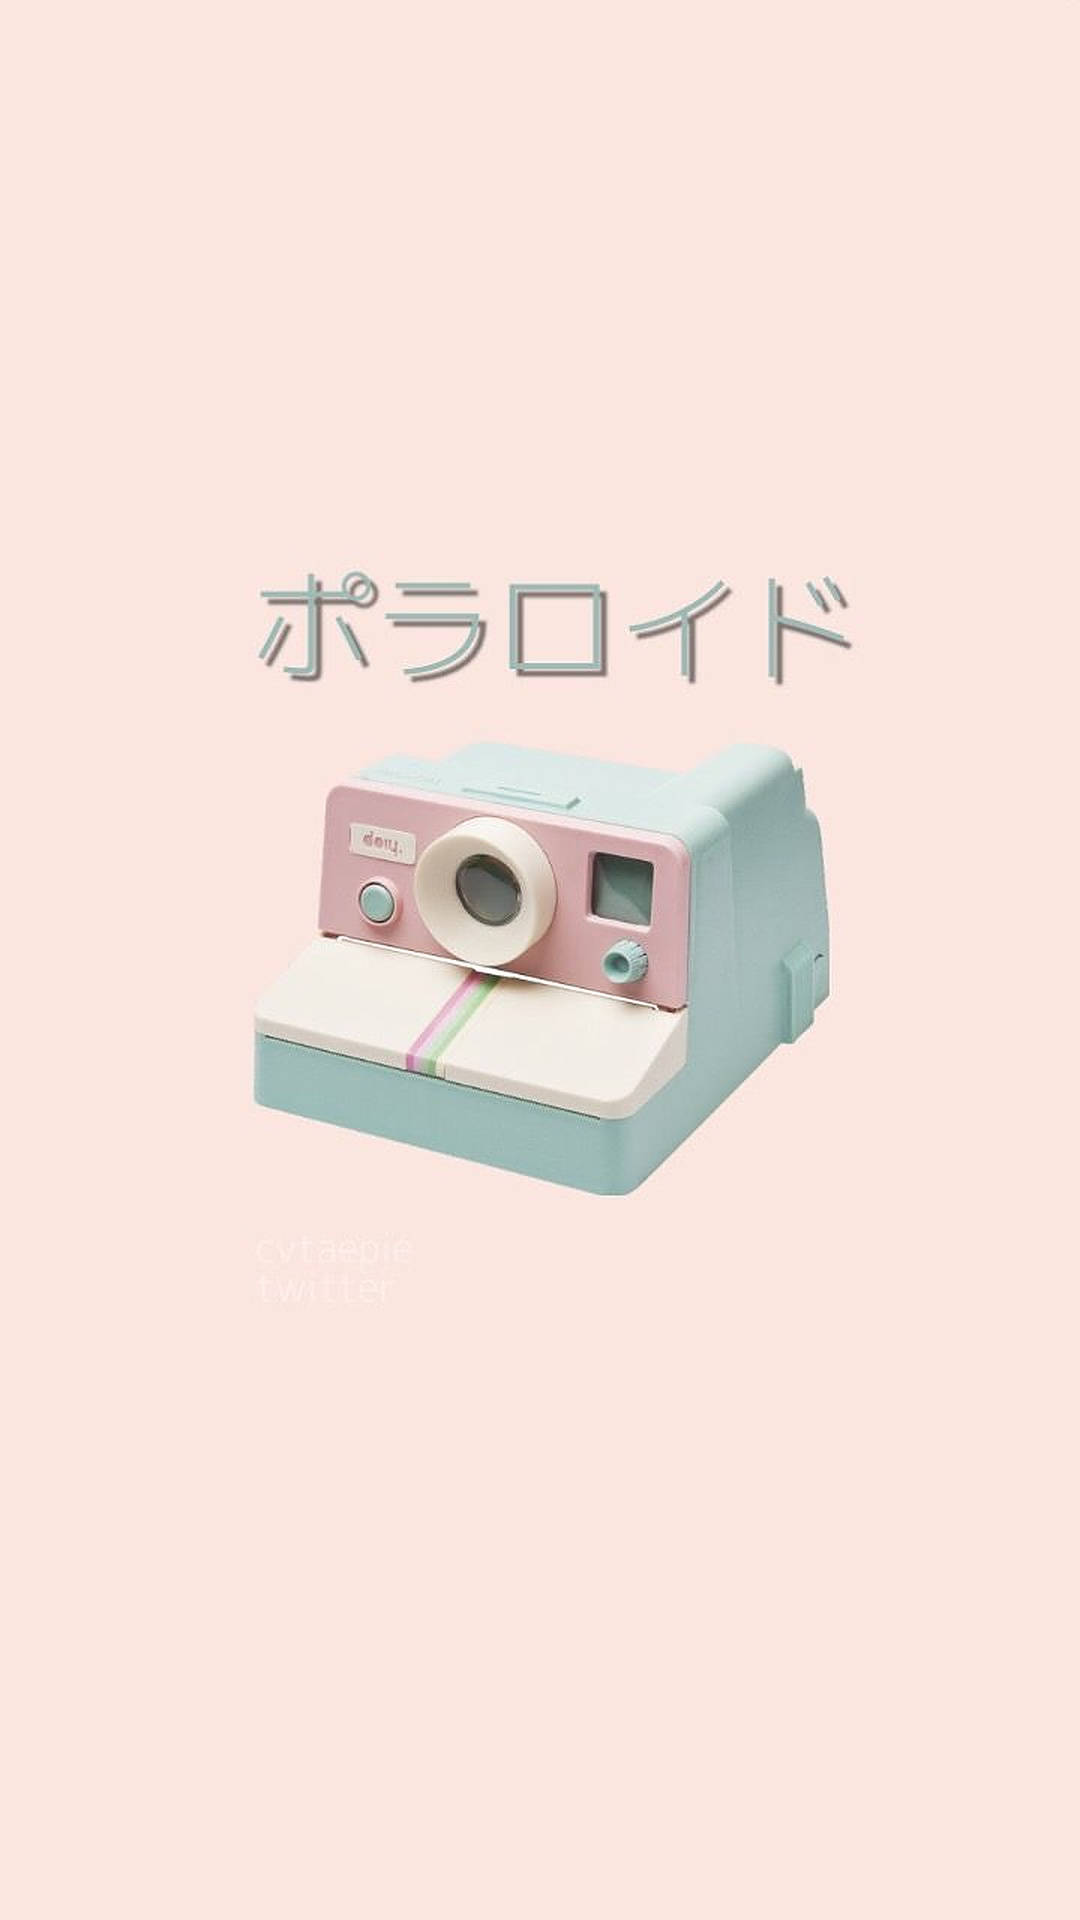 Cute Polaroid